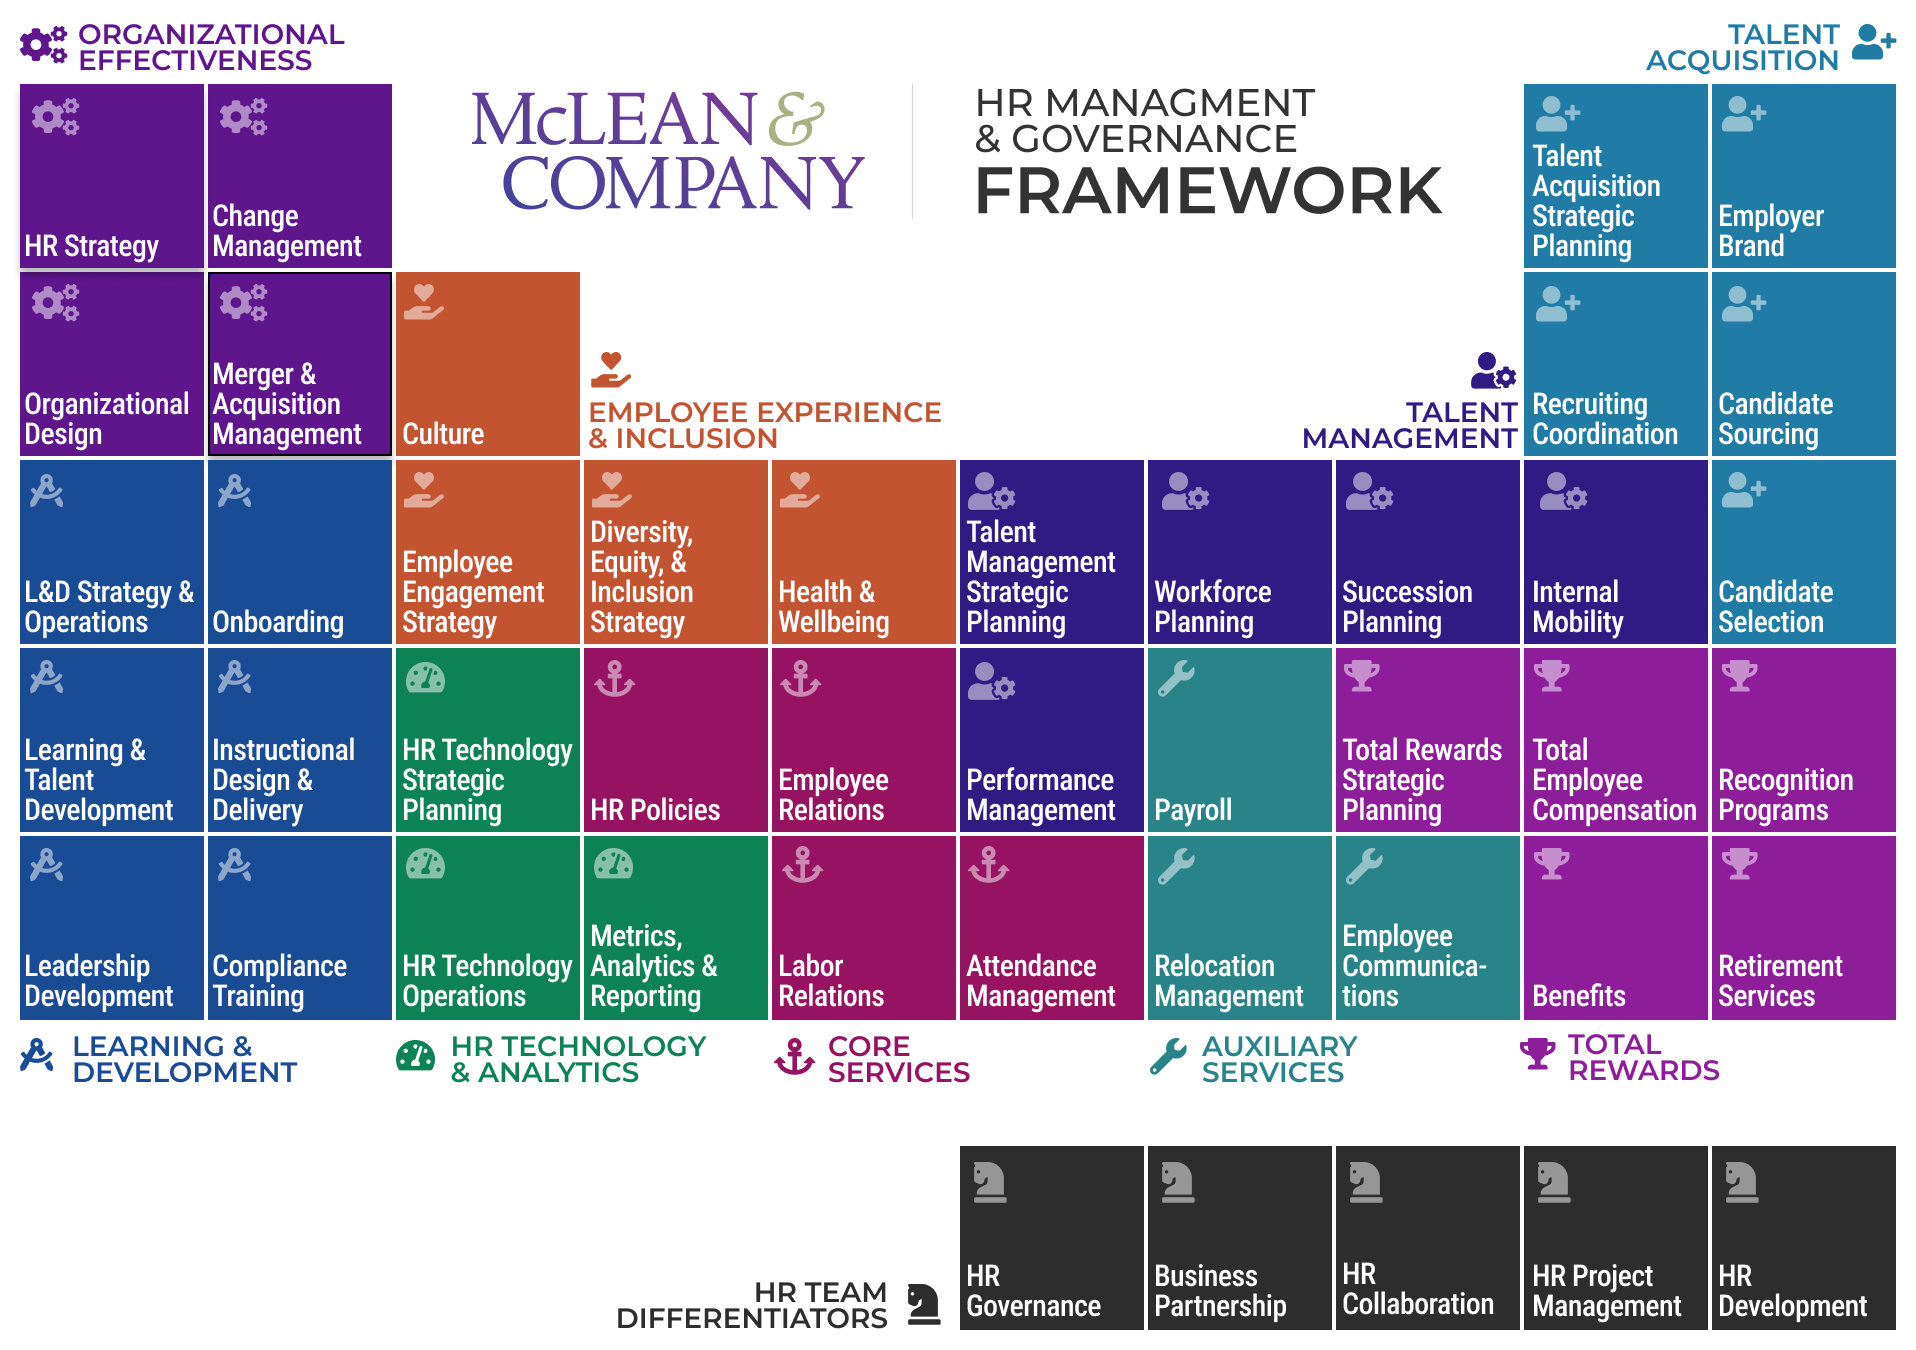 HRMG framework